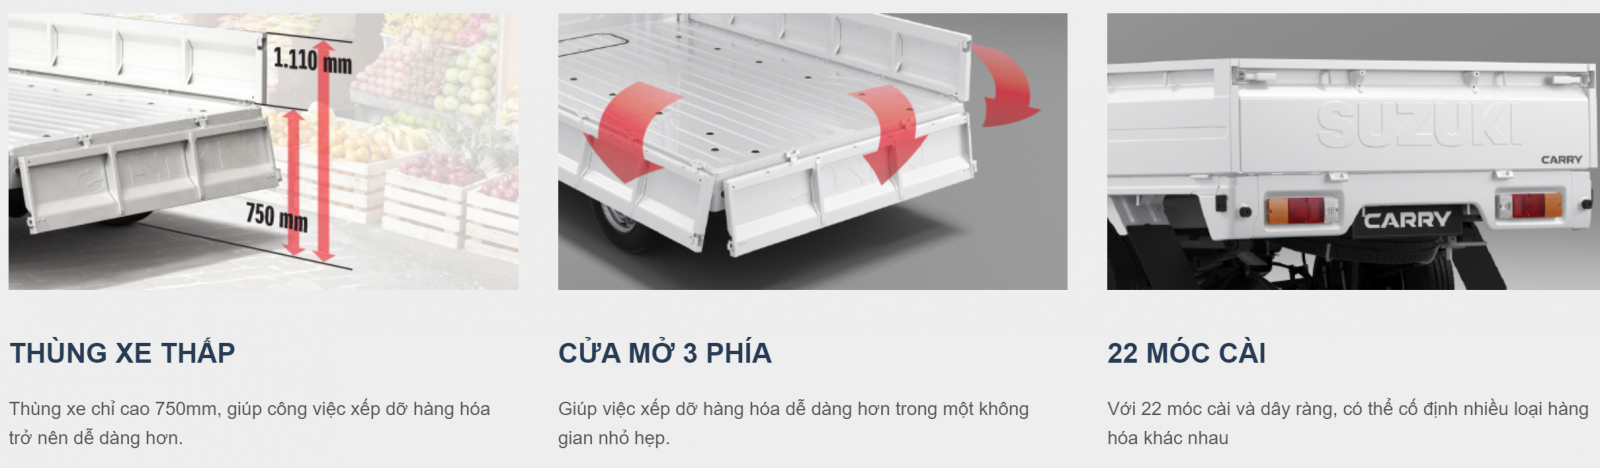 Carry Pro được trang bị 22 móc cài chắc chắn ở thùng xe, đảm bảo an toàn khi vận chuyển hàng hóa trên đường